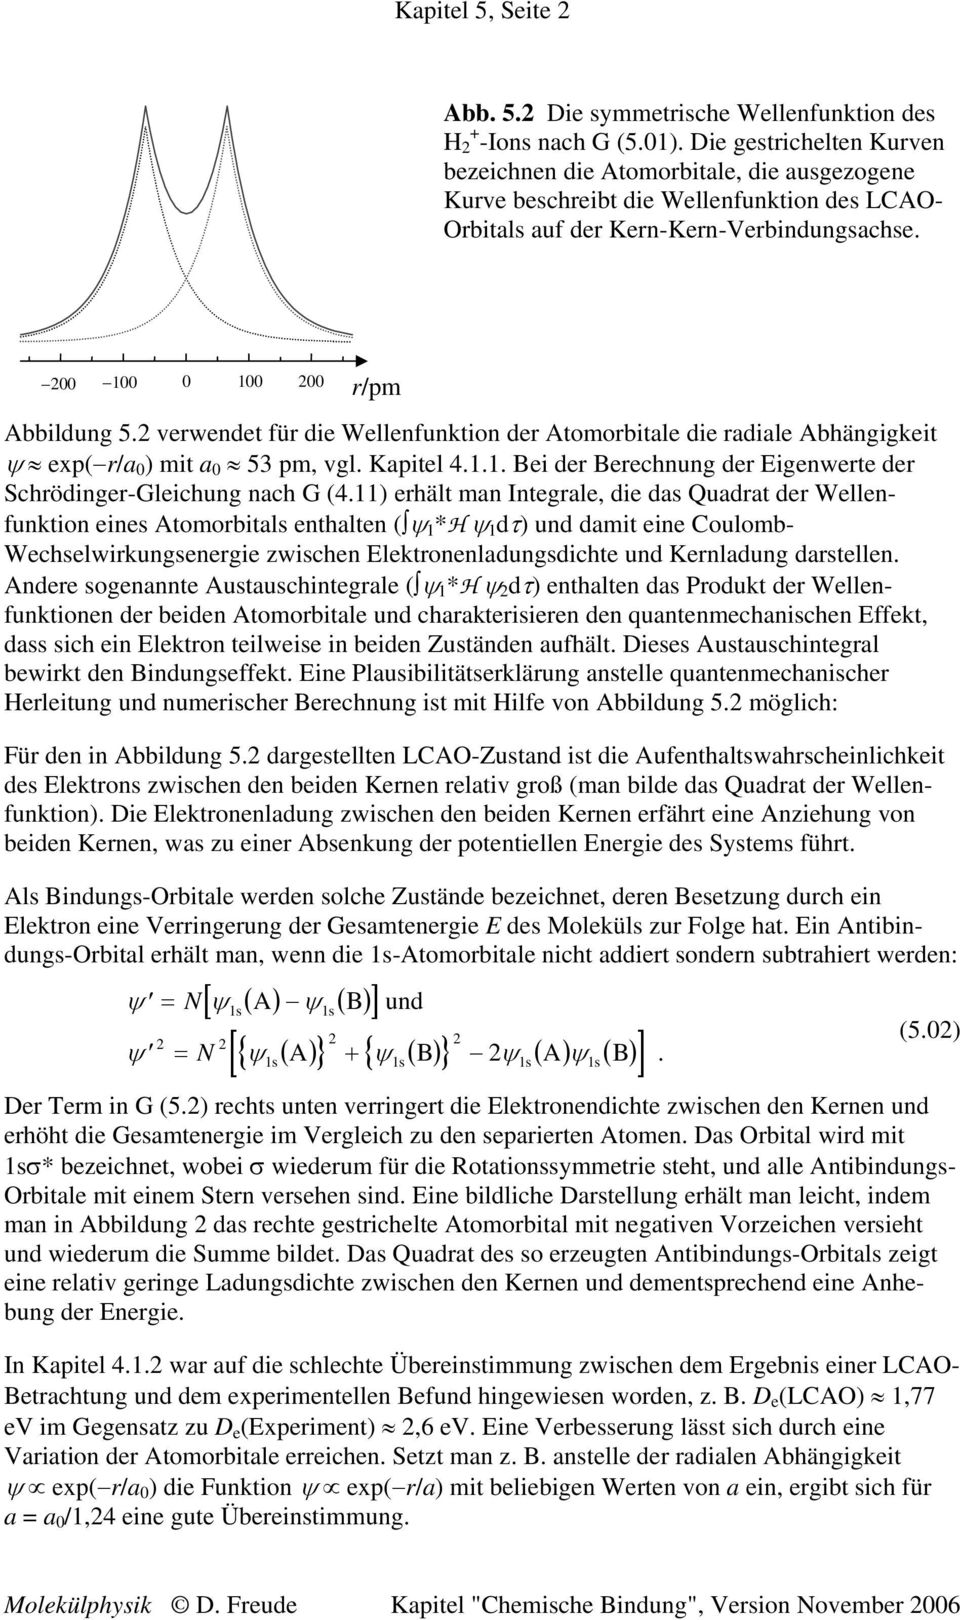 verwendet für die Wellenfuntion der Atomorbitale die radiale Abhängigeit ex( r/a 0 ) mit a 0 5 m vgl. Kaitel 4... Bei der Berechnung der Eigenwerte der Schrödinger-Gleichung nach G (4.